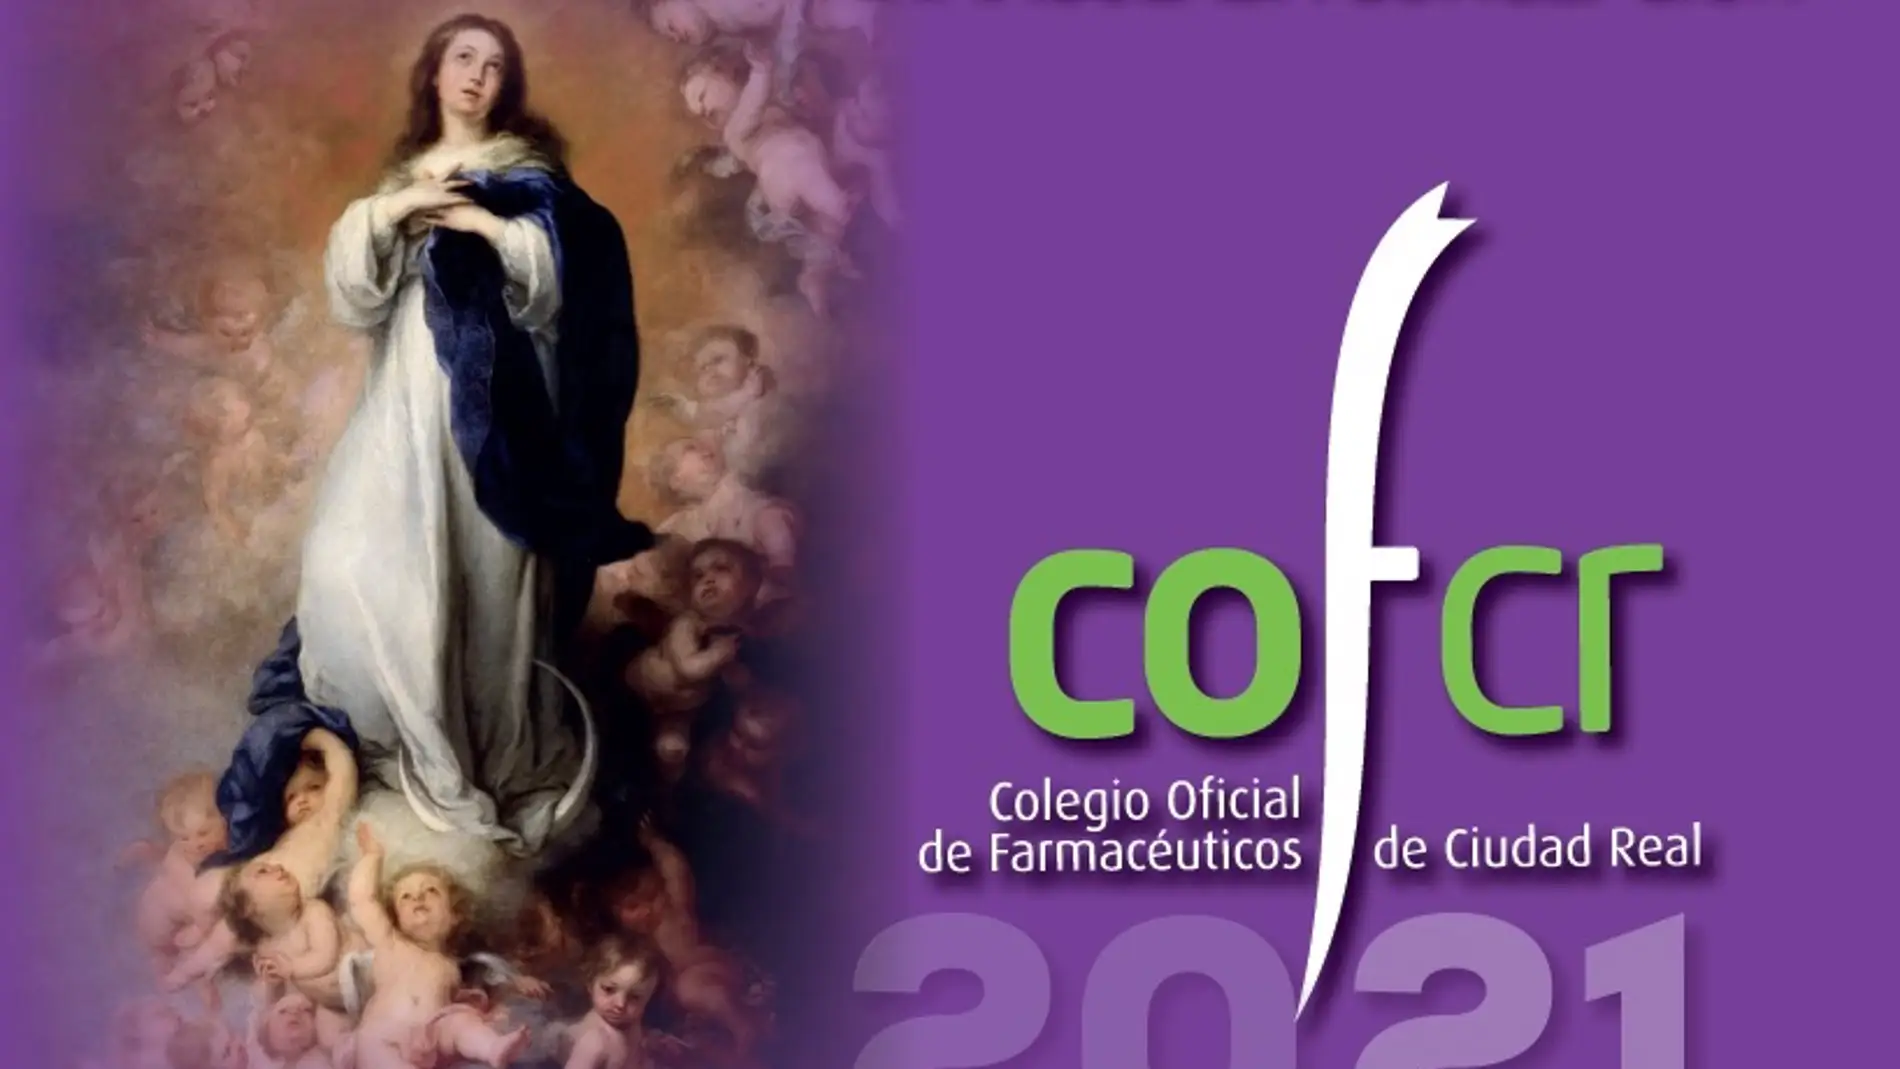 Cartel anunciador de los actos del Colegio de Farmacéuticos de Ciudad Real